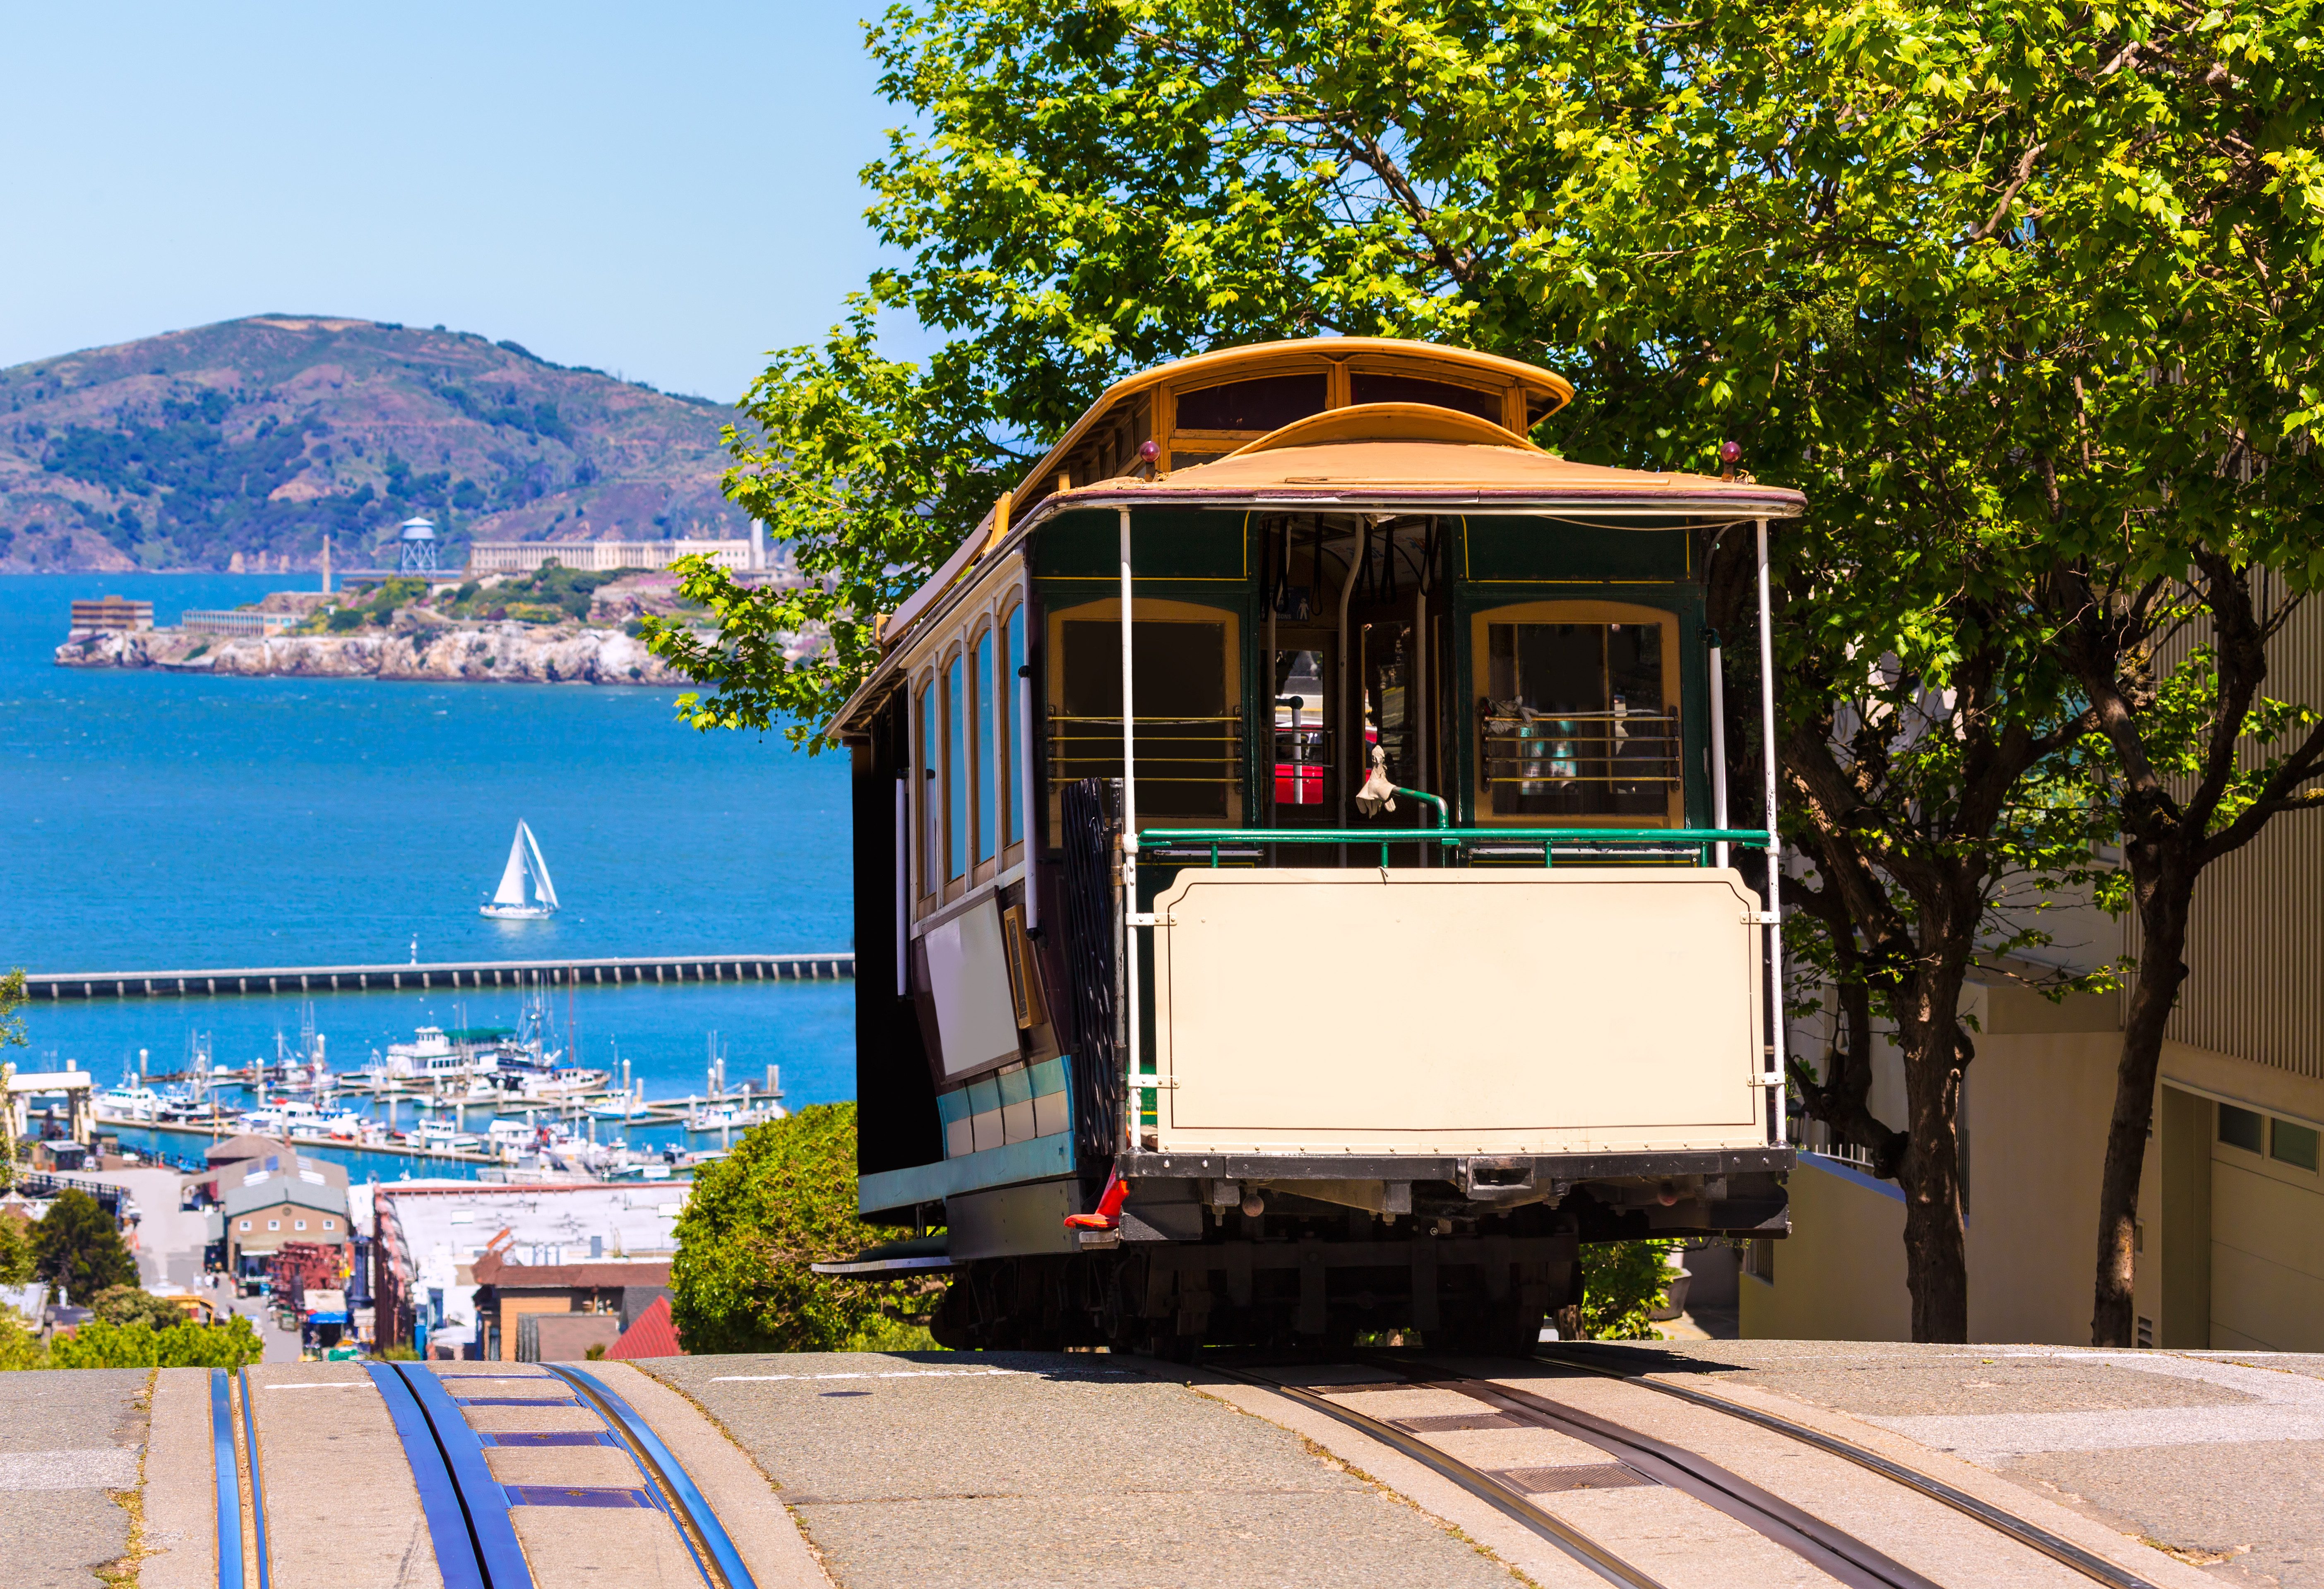 Канатный трамвай. Канатный трамвай Сан-Франциско. Сан Франциско трамвайчик. Сан Франциско трамвай фуникулер. Канатная дорога Сан Франциско.